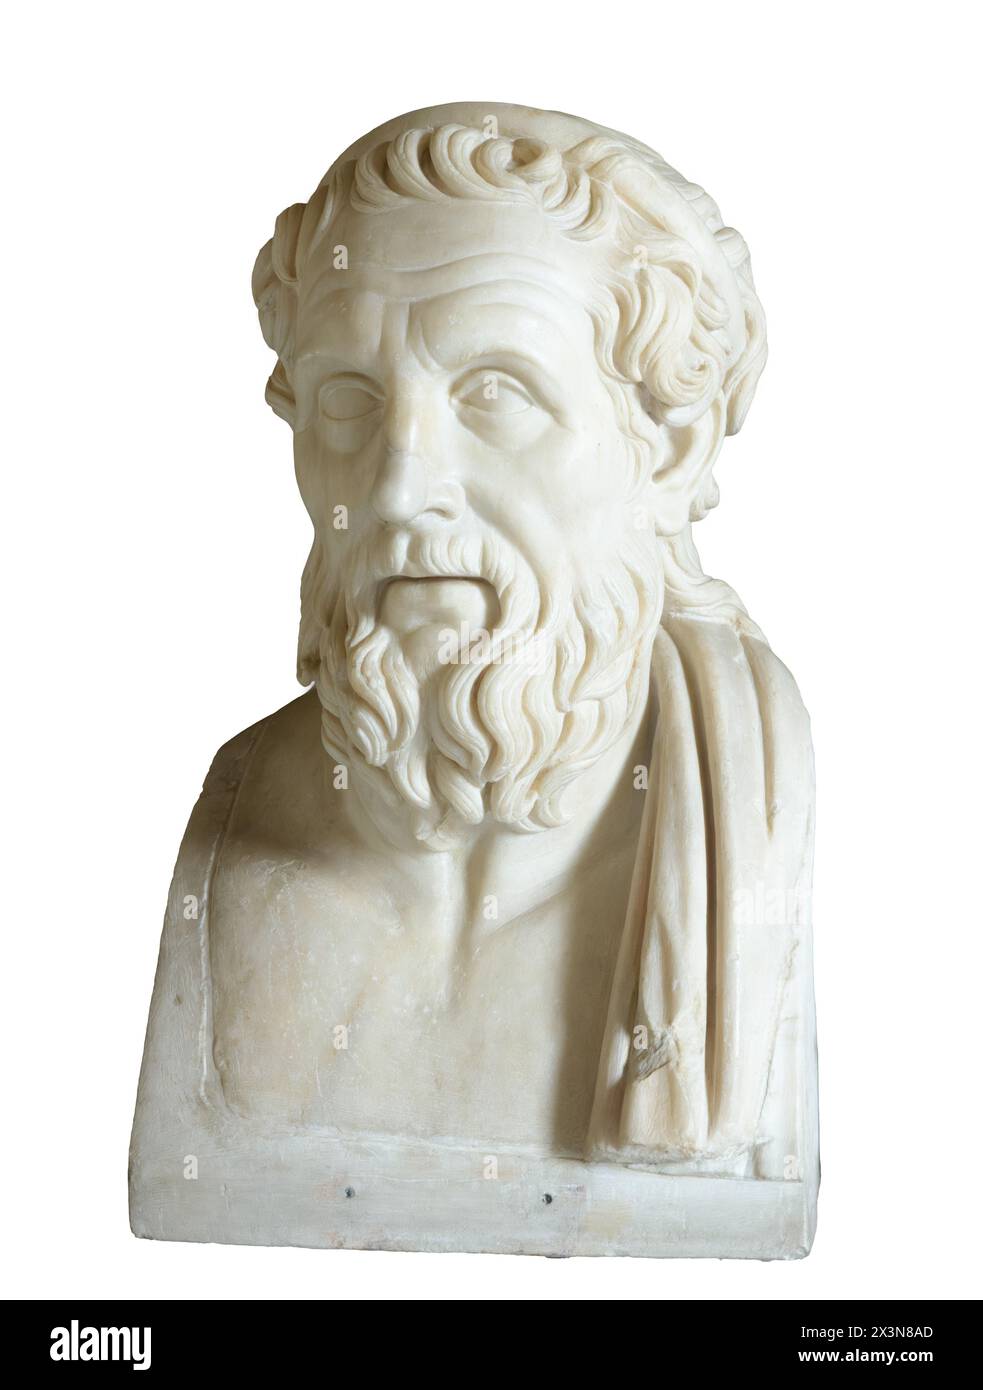 Busto in marmo dell'antico poeta greco Omero. Copia romana del II secolo d.C. dopo un originale greco della fine del IV secolo a.C. Foto Stock